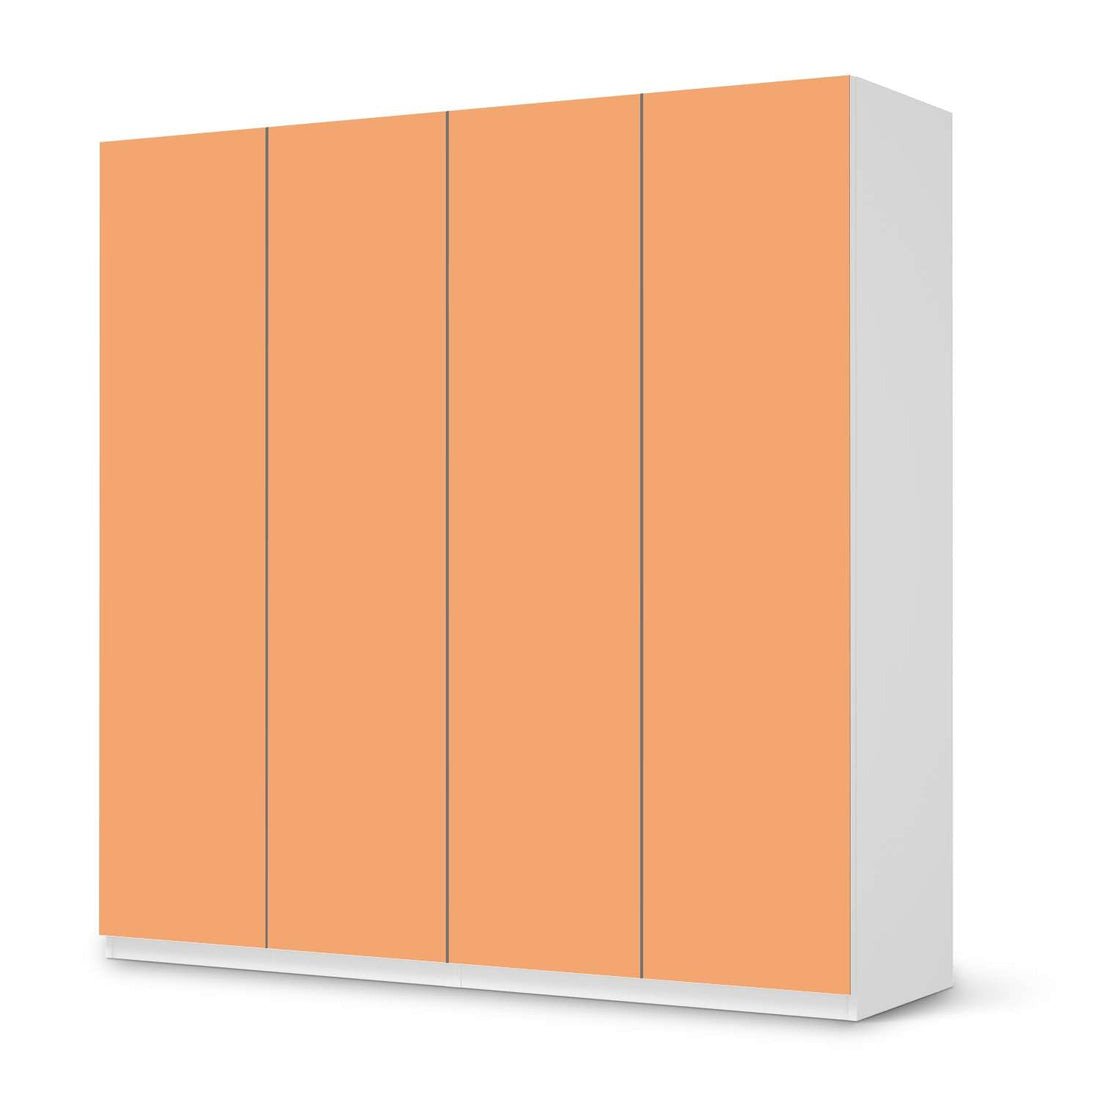 Klebefolie für Schränke Orange Light - IKEA Pax Schrank 201 cm Höhe - 4 Türen - weiss